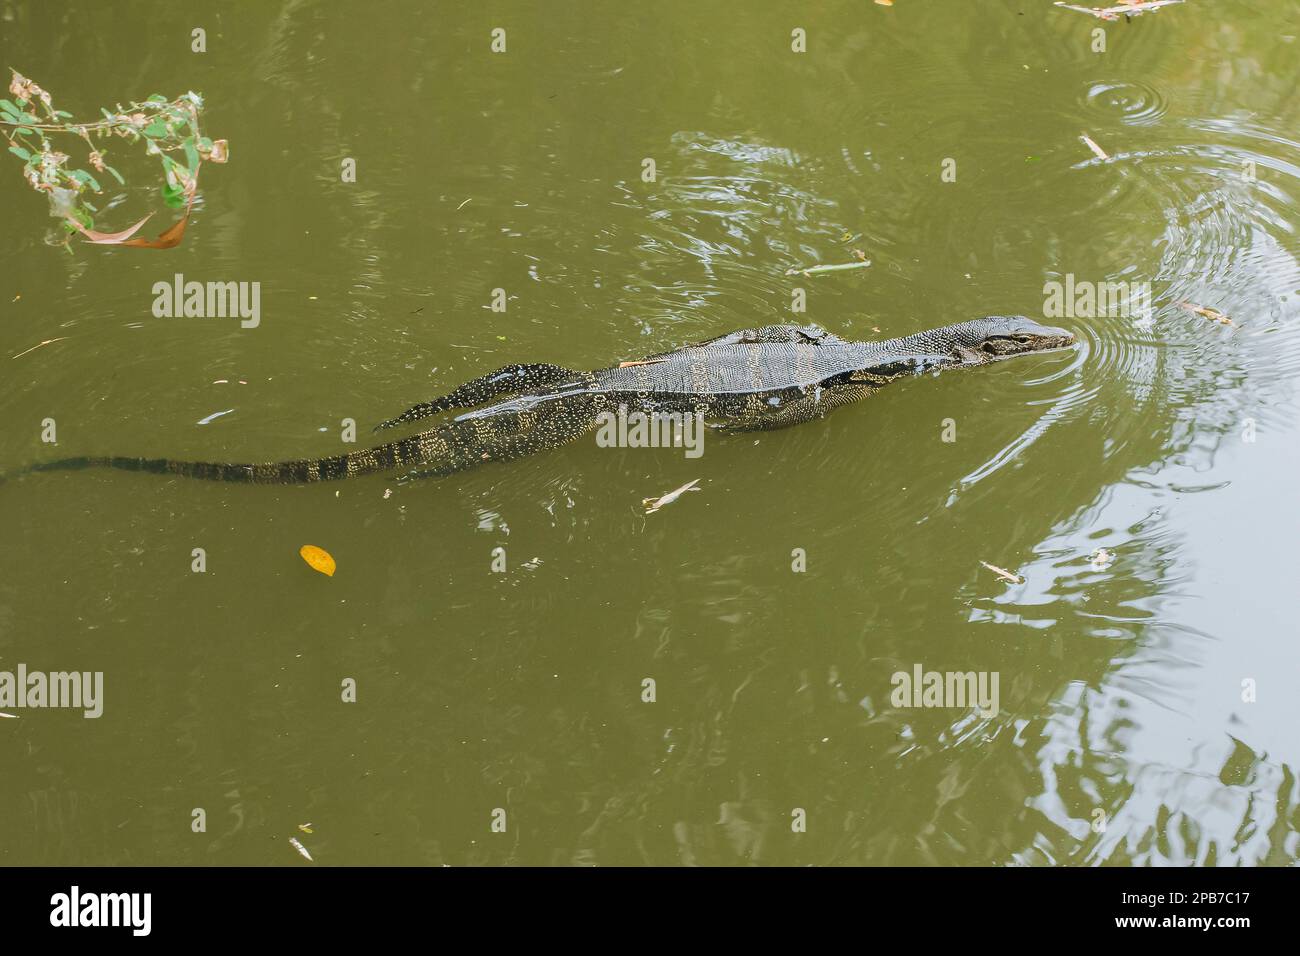 Bringer est dans l'eau, Varanus salvator est un reptile en Asie du Sud. C'est un grand lézard, de 2,5 à 3 mètres de longueur. Aimez trouver de la nourriture, en pourrissant de la nourriture Banque D'Images